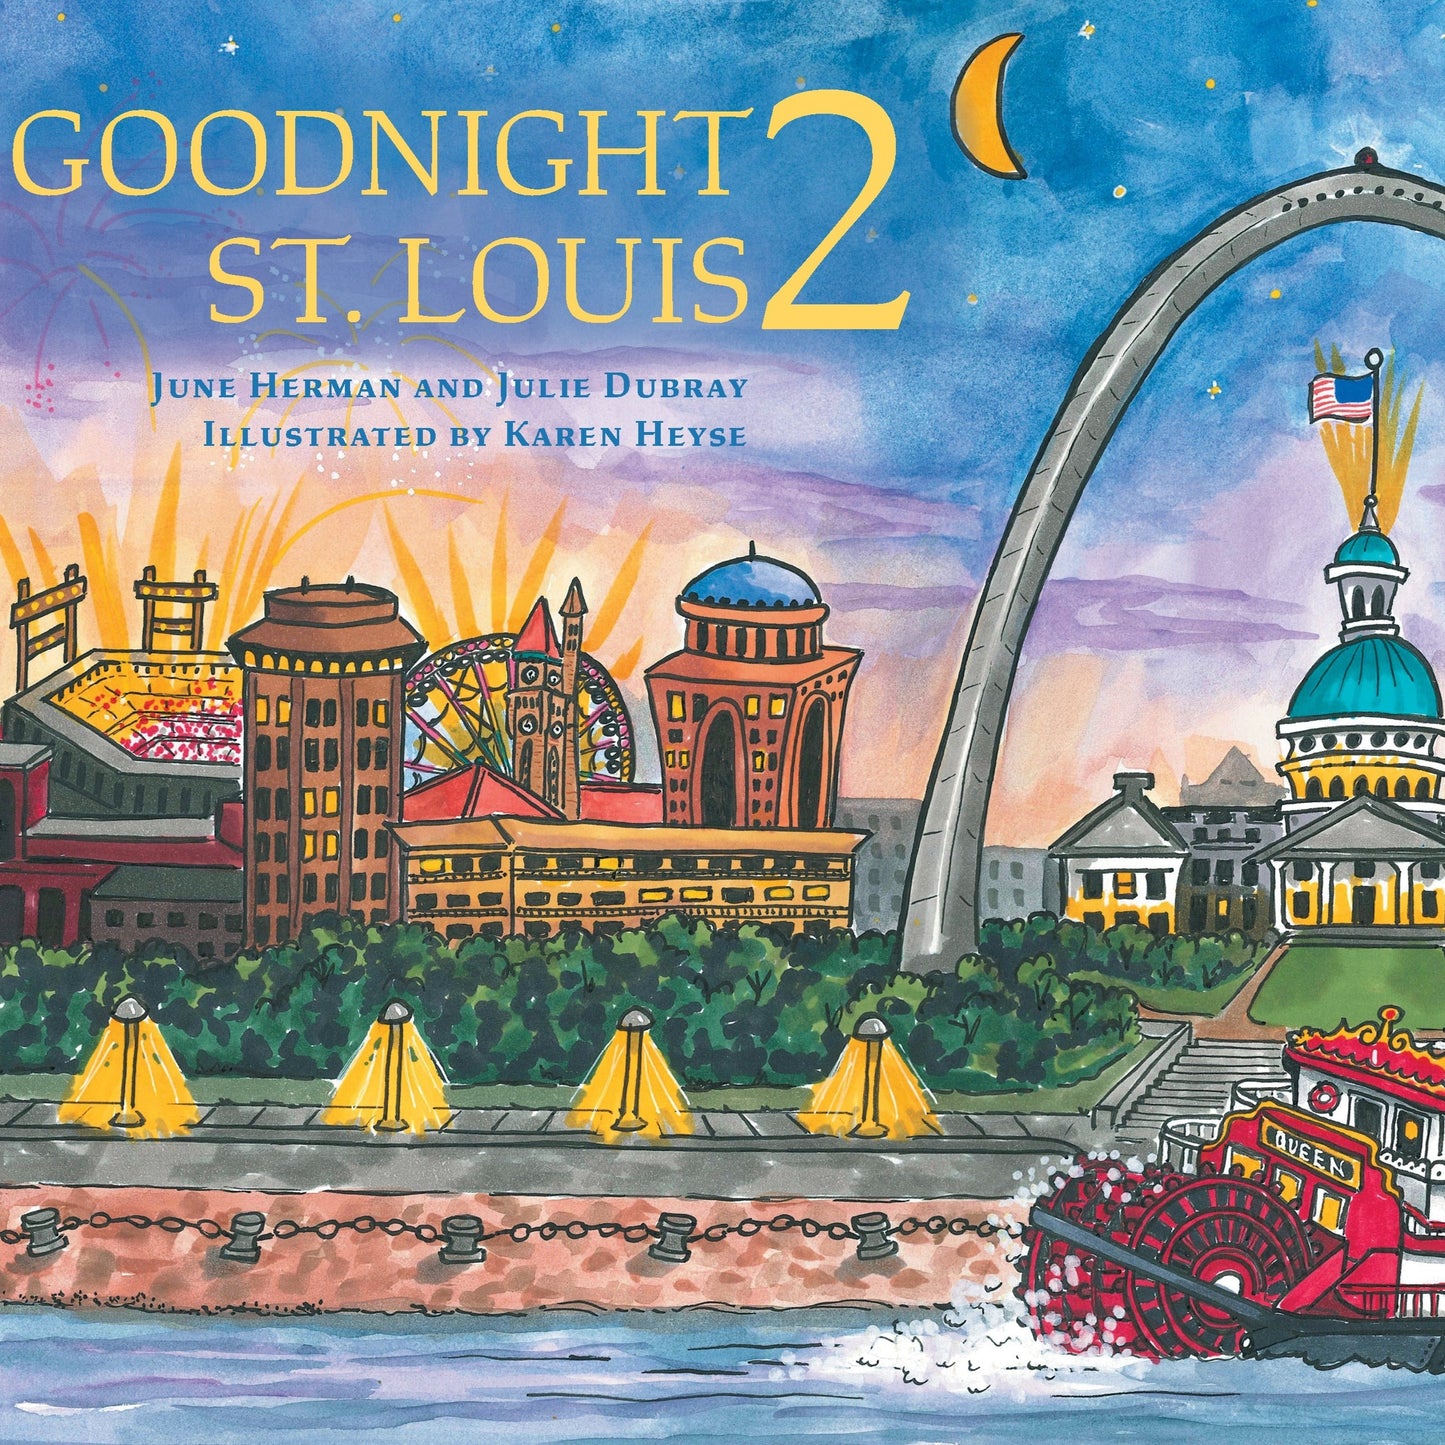 "Goodnight St. Louis 2" Children's Book